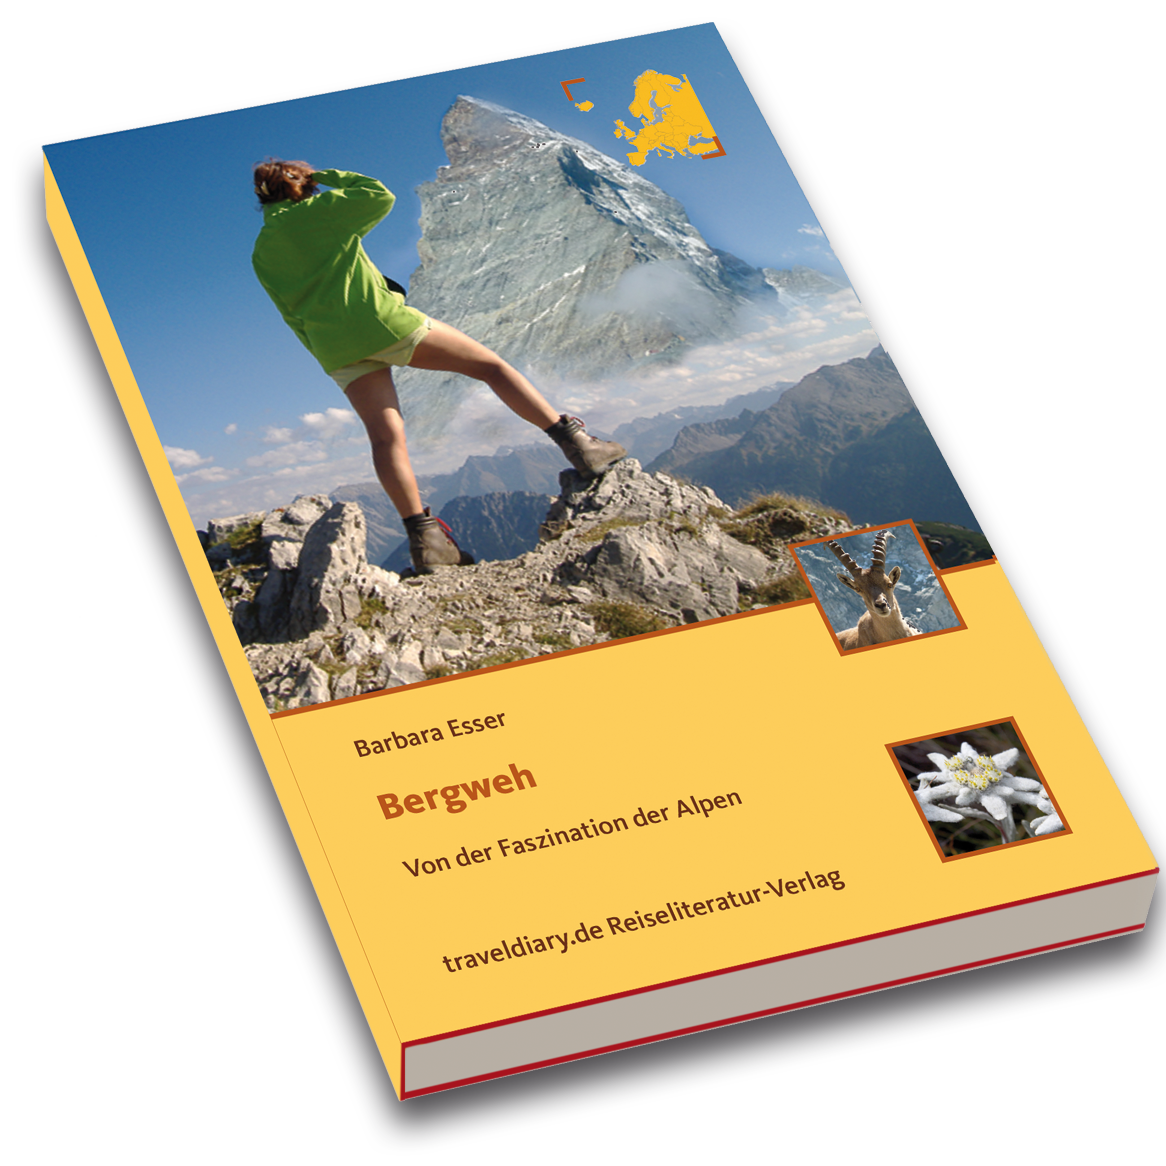 Bergweh, Bergweh von der Faszination der Alpen, Bergtouren, Bergbericht, ueber die Alpen, Bergabenteuer